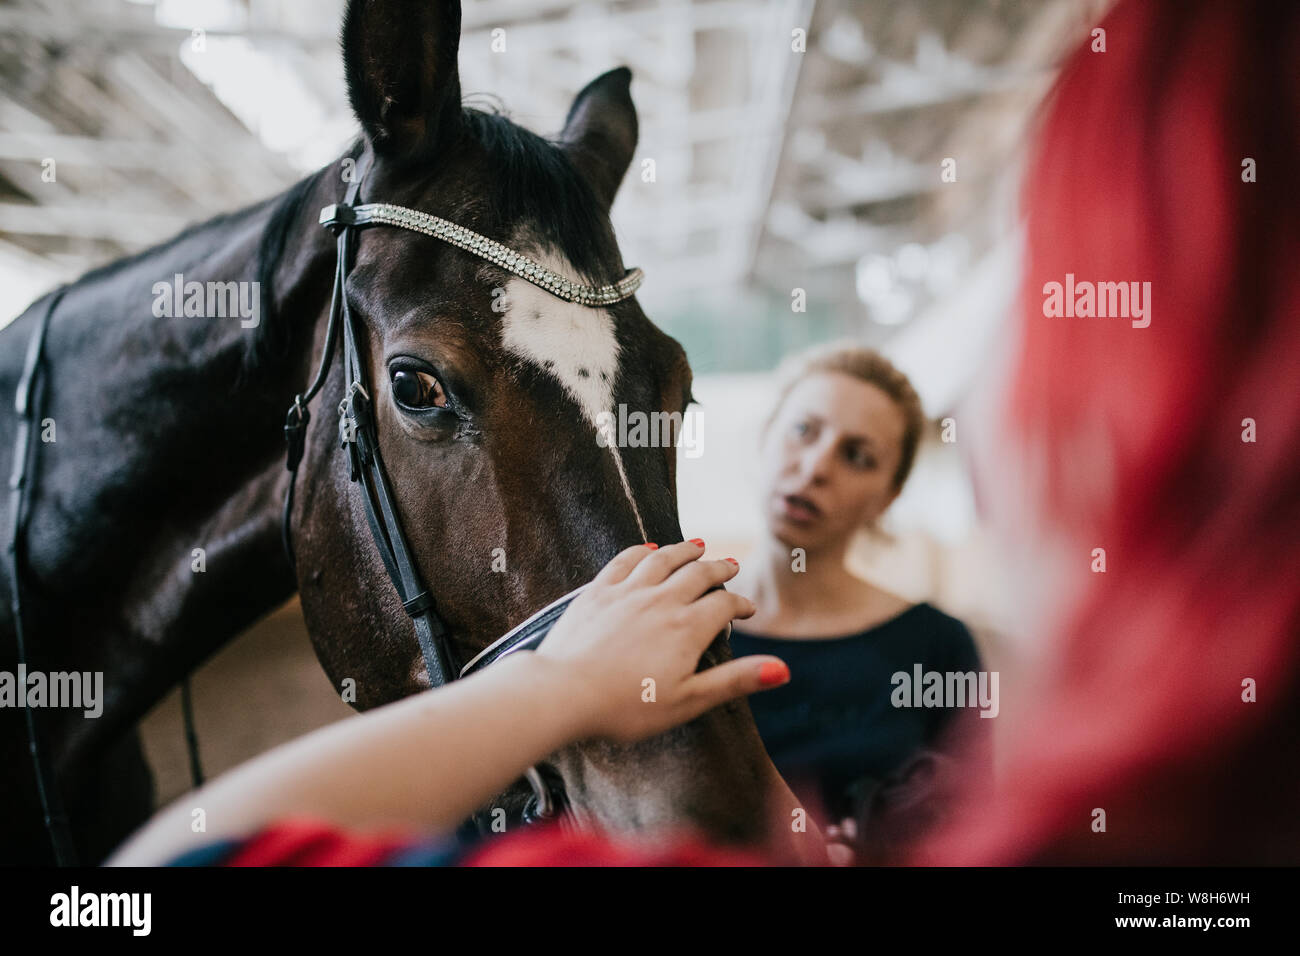 Les chevaux et les visiteurs de la base d'équitation, l'équitation. L'alimentation et le cheval caressant Banque D'Images